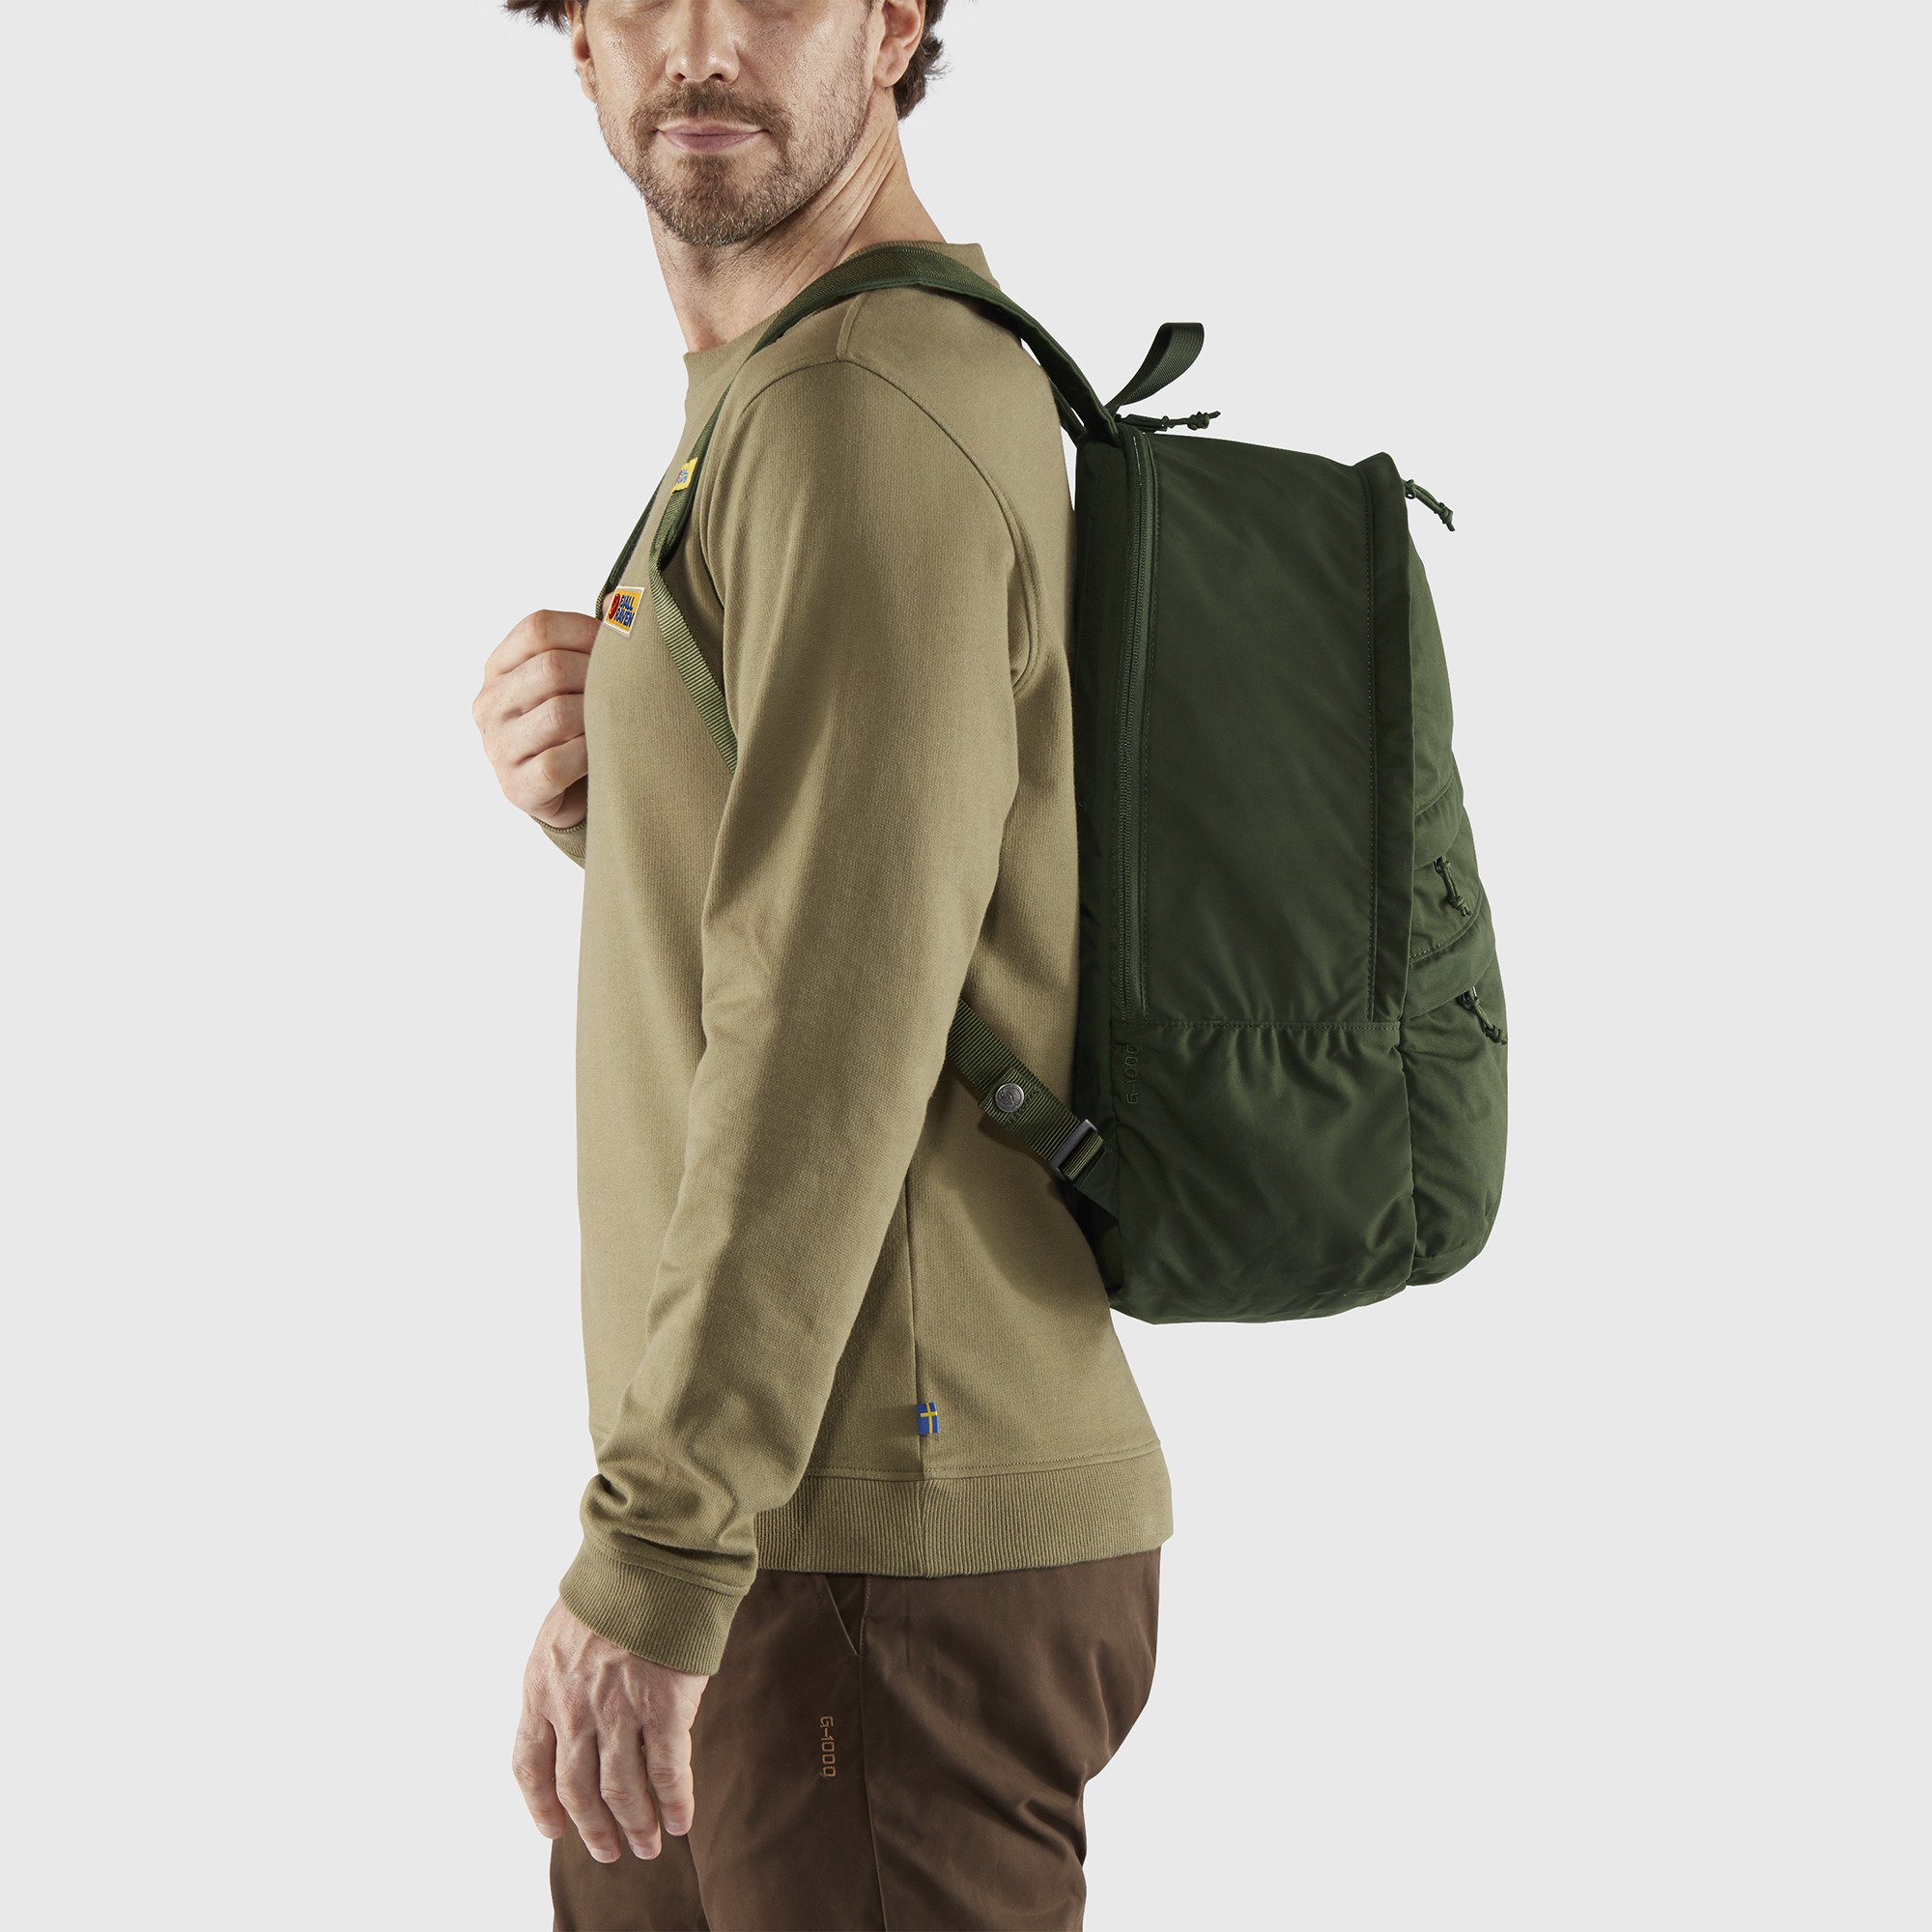 Vardag 28 Laptop - Backpacks & bags بذور اشجار للبيع